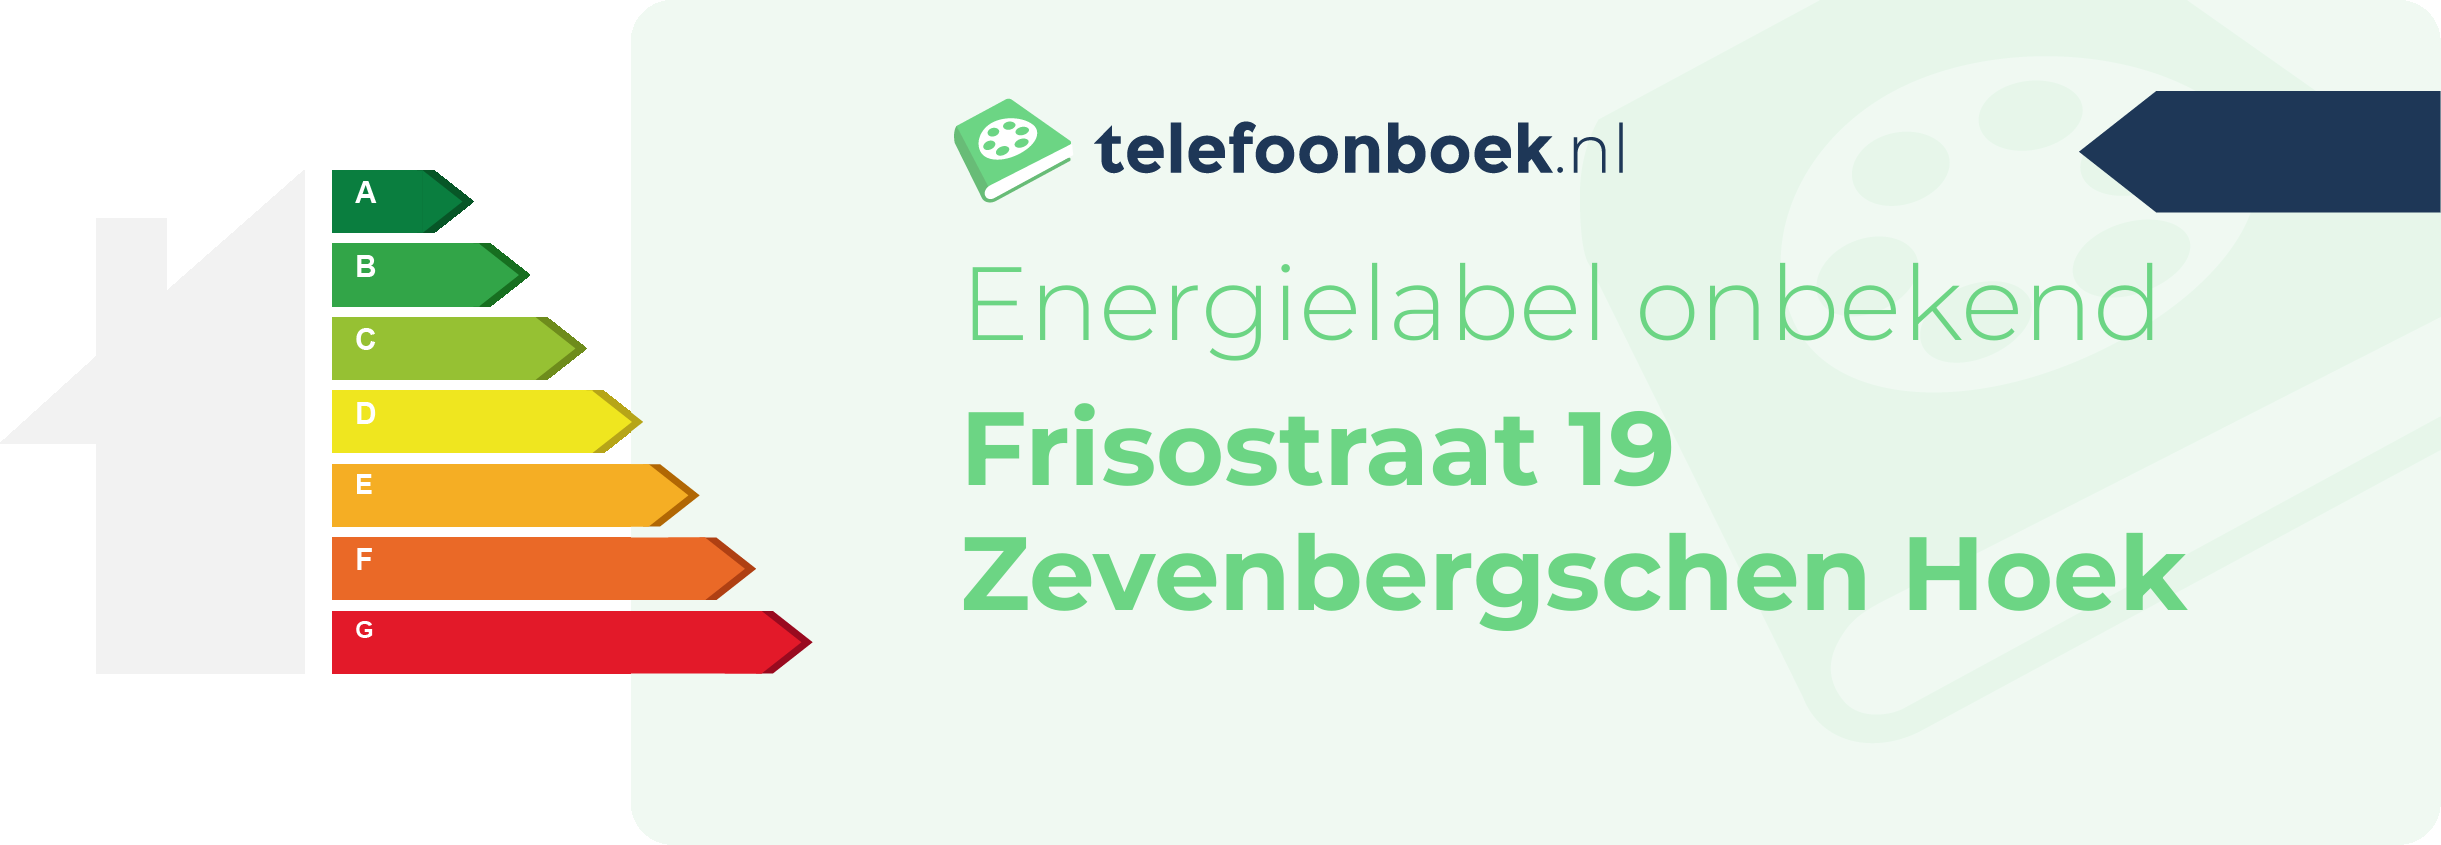 Energielabel Frisostraat 19 Zevenbergschen Hoek